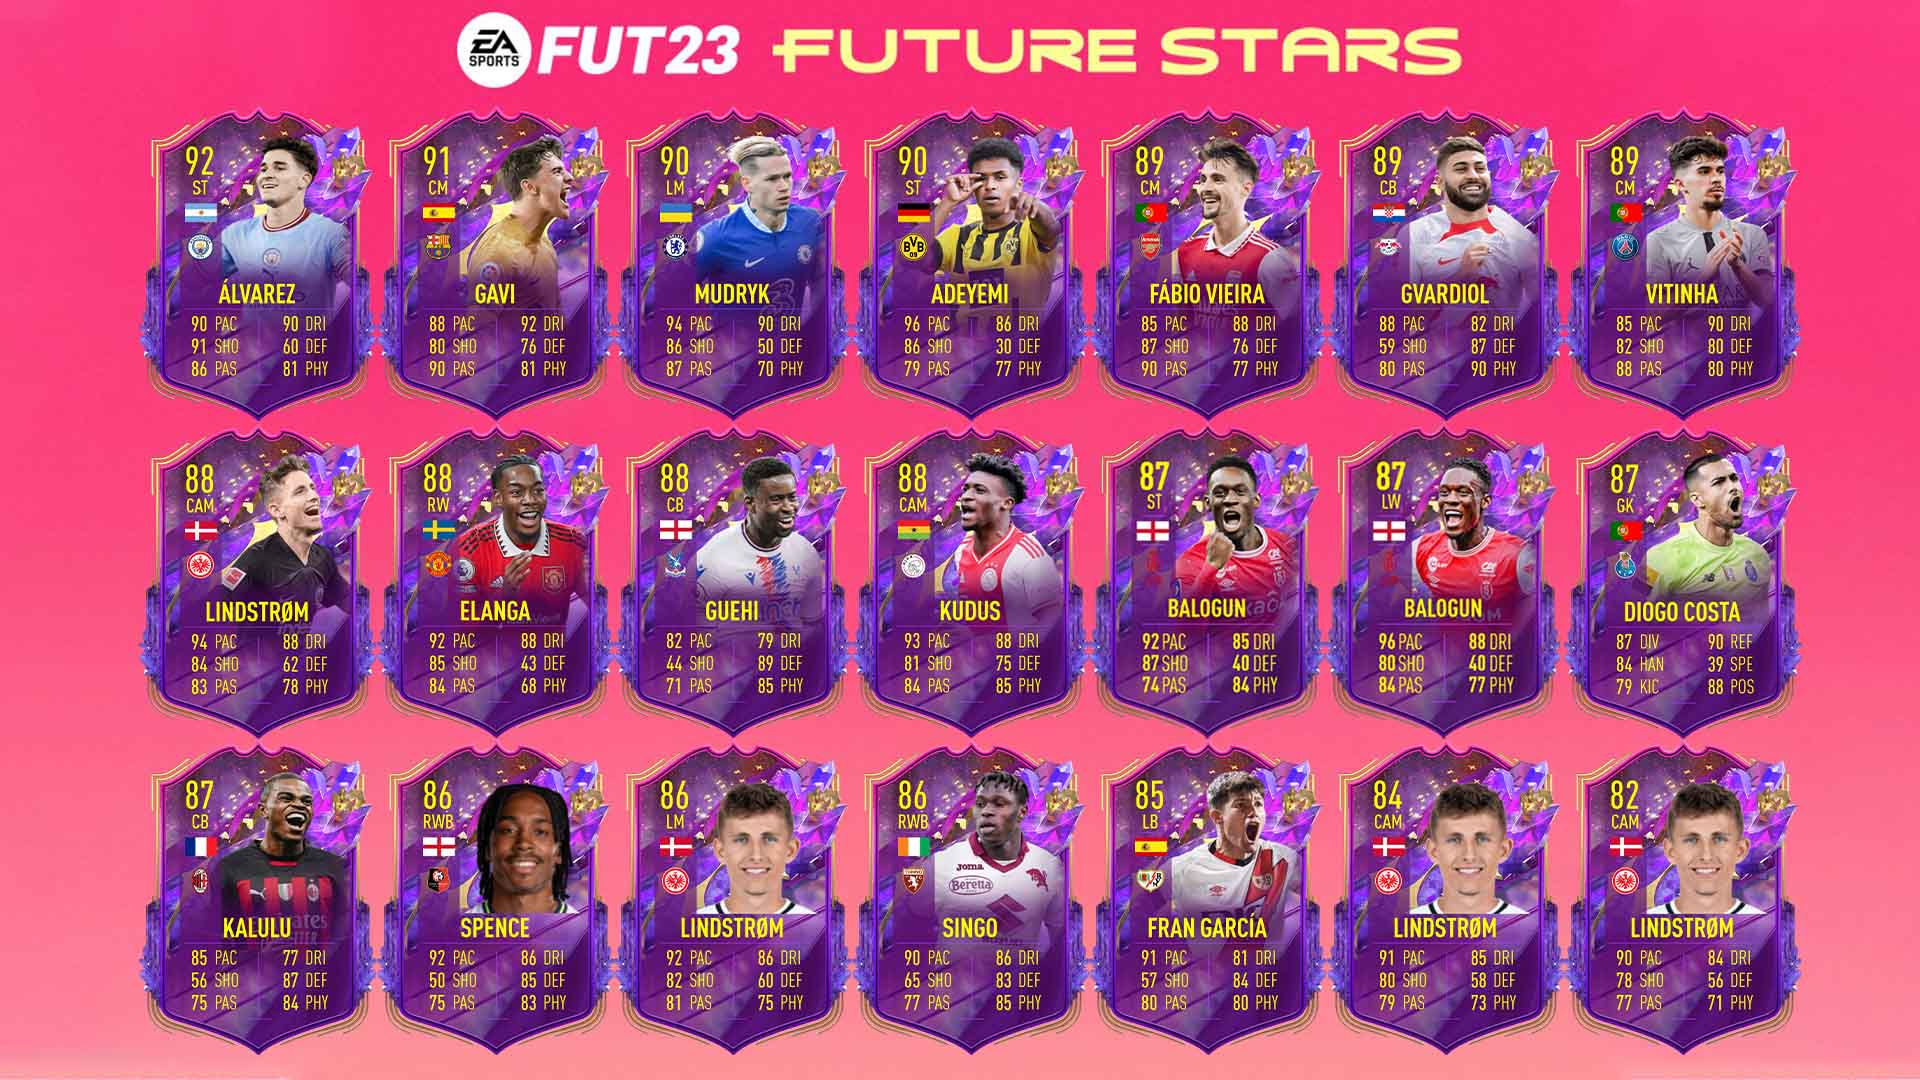 Bilder zu FIFA 23: Future Stars - Alle Spieler und ihre Upgrades im Überblick